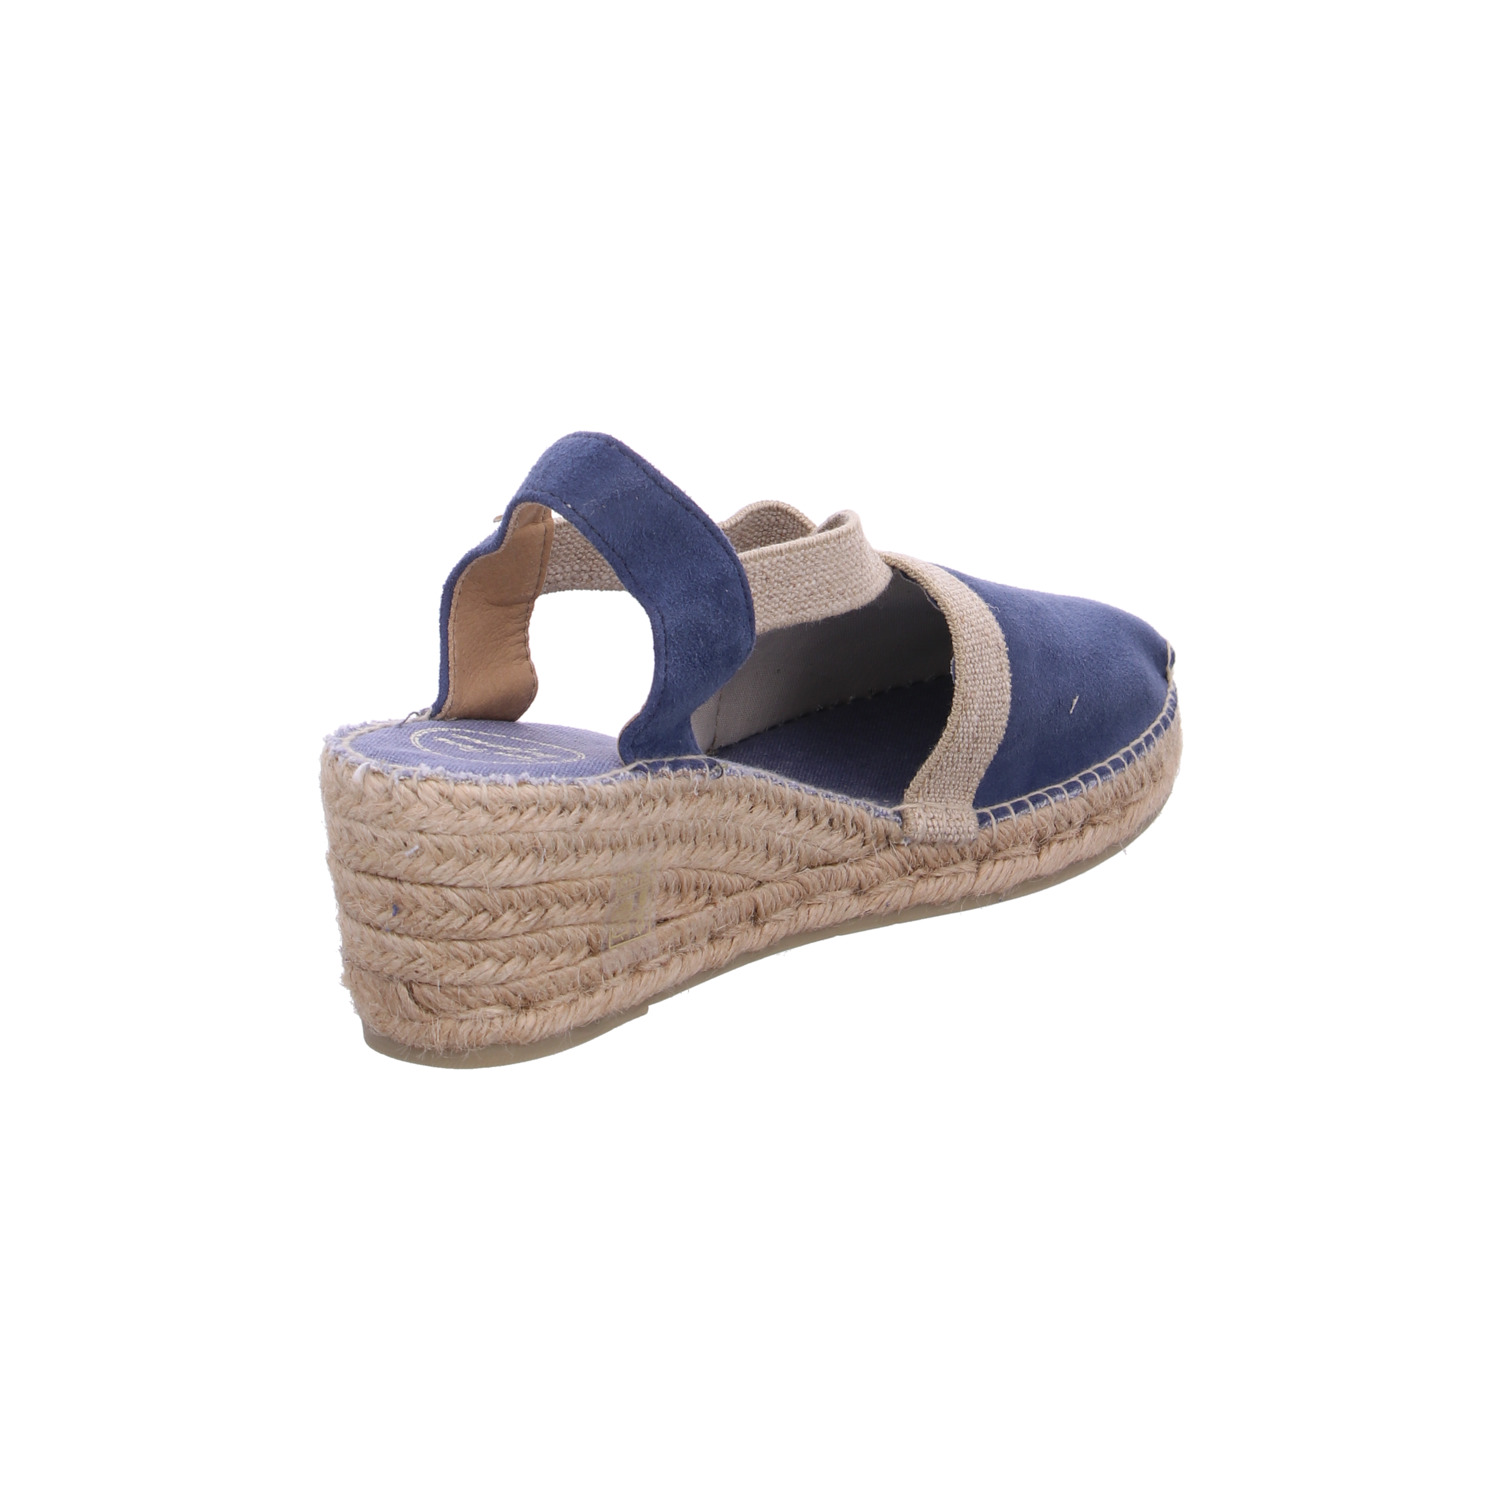 toni-pons-sandale-blau_125644-36